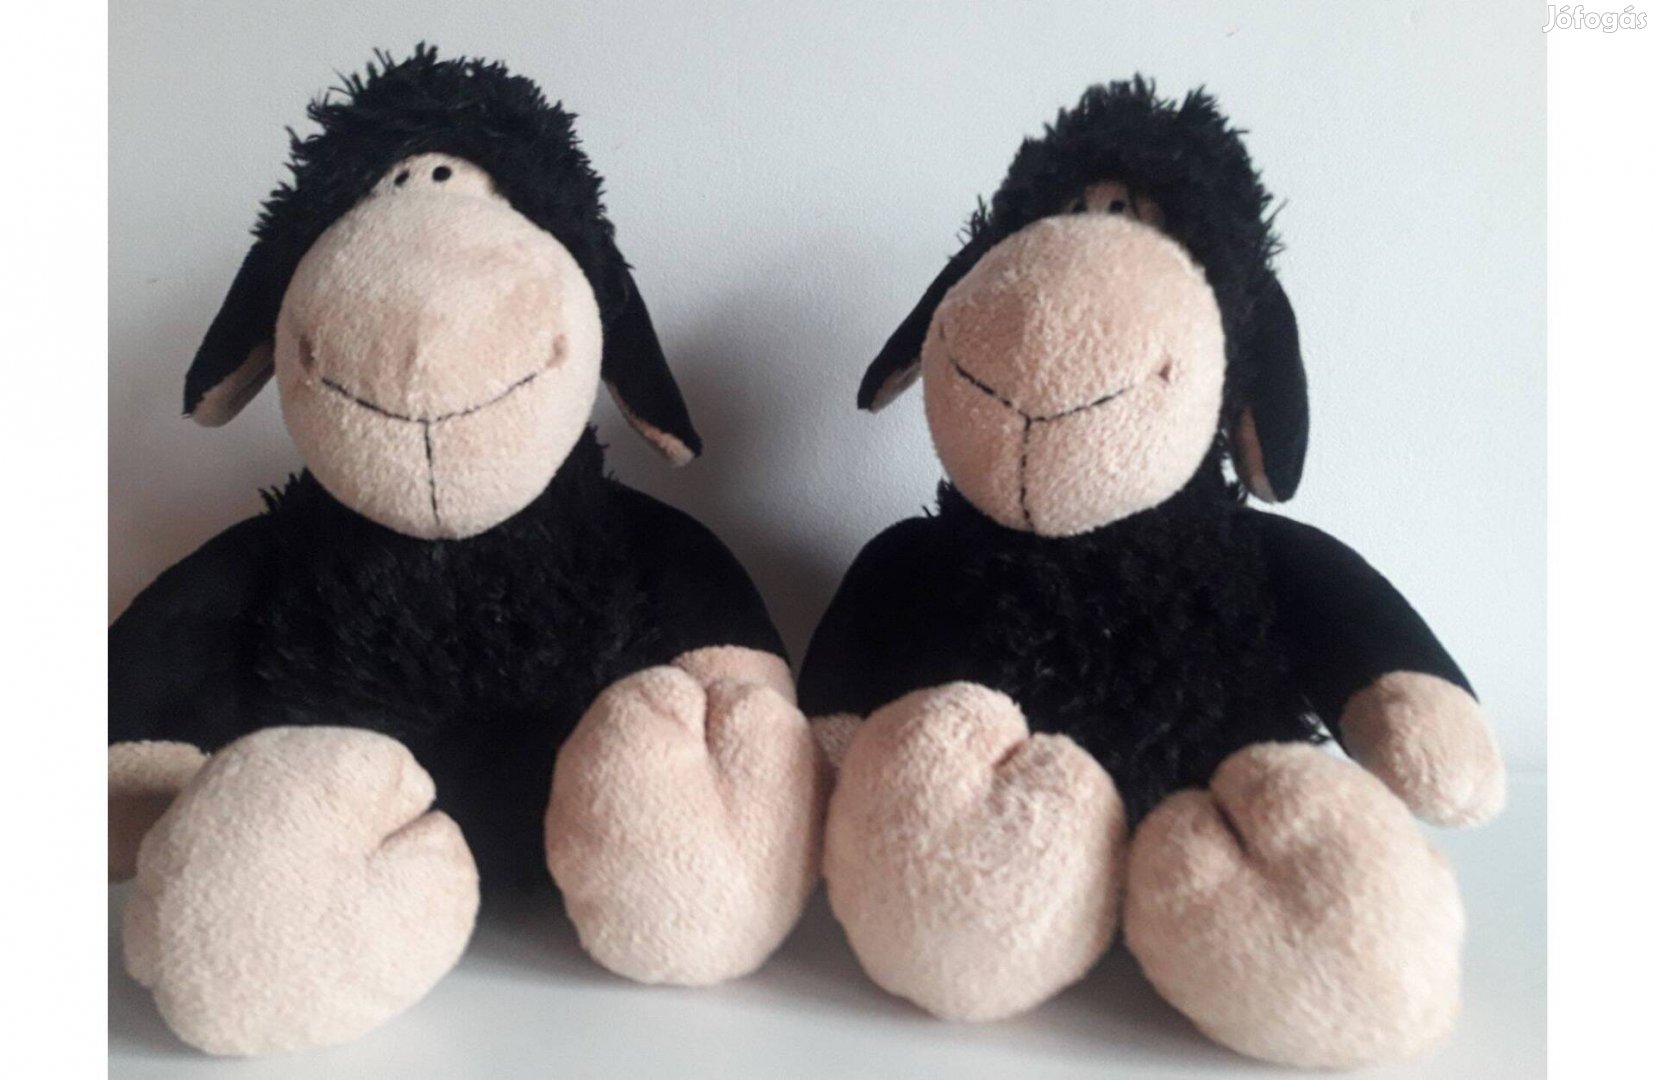 35 cm magas Nici Jolly fekete bárányok újszerű állapotban eladóak